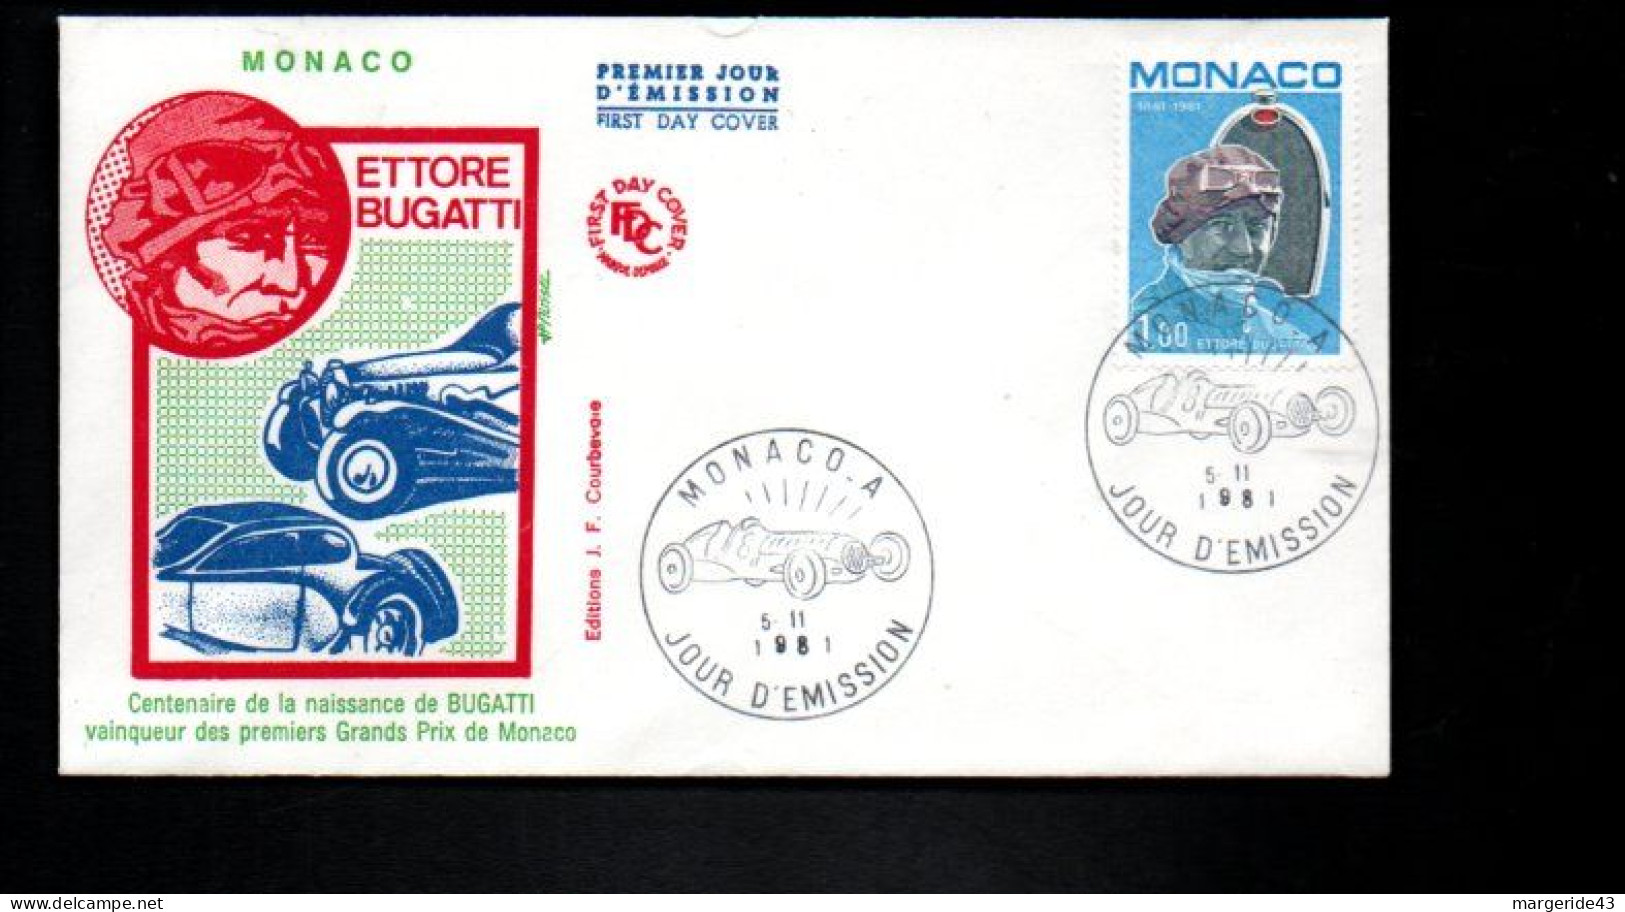 MONACO FDC 191 ETTORE BUGATTI - Automobilismo